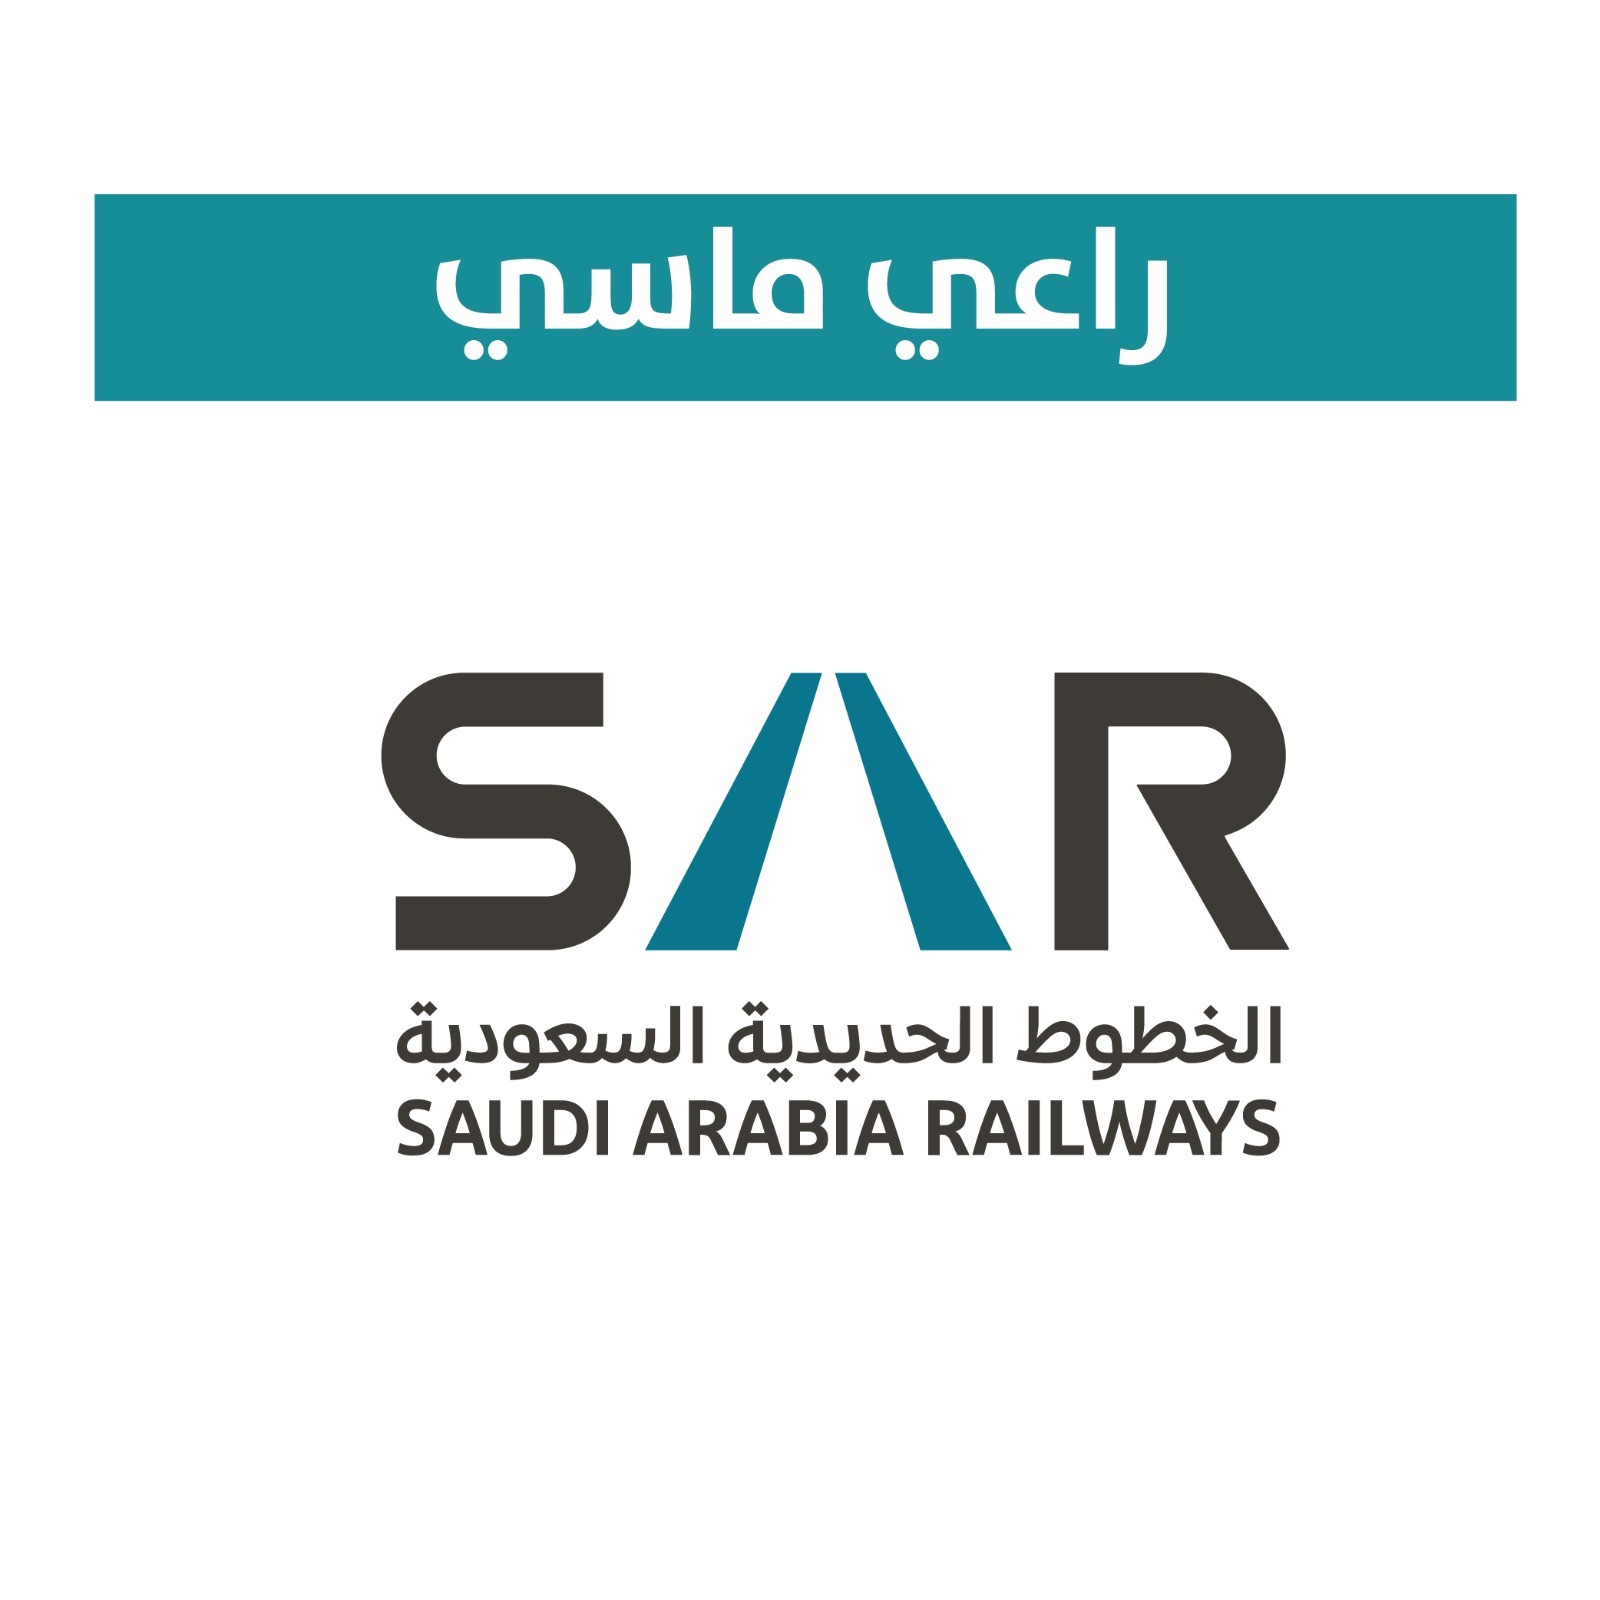 الخطوط الحديدية السعودية ( سار )